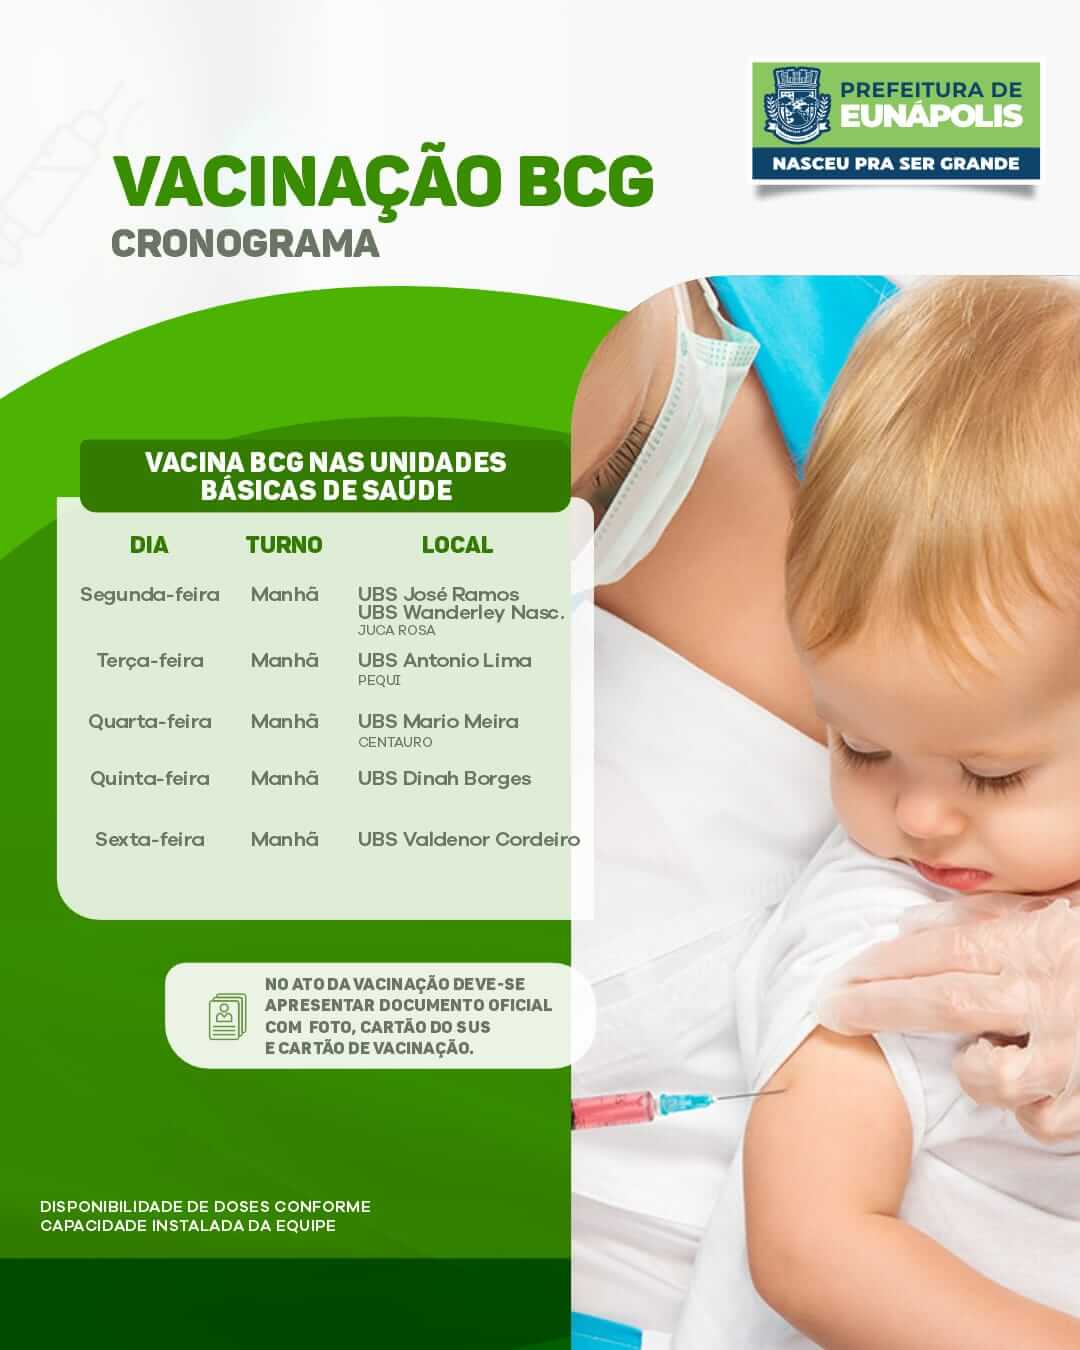 Prefeitura solicita que eunapolitanos atualizem a caderneta de vacinação 5